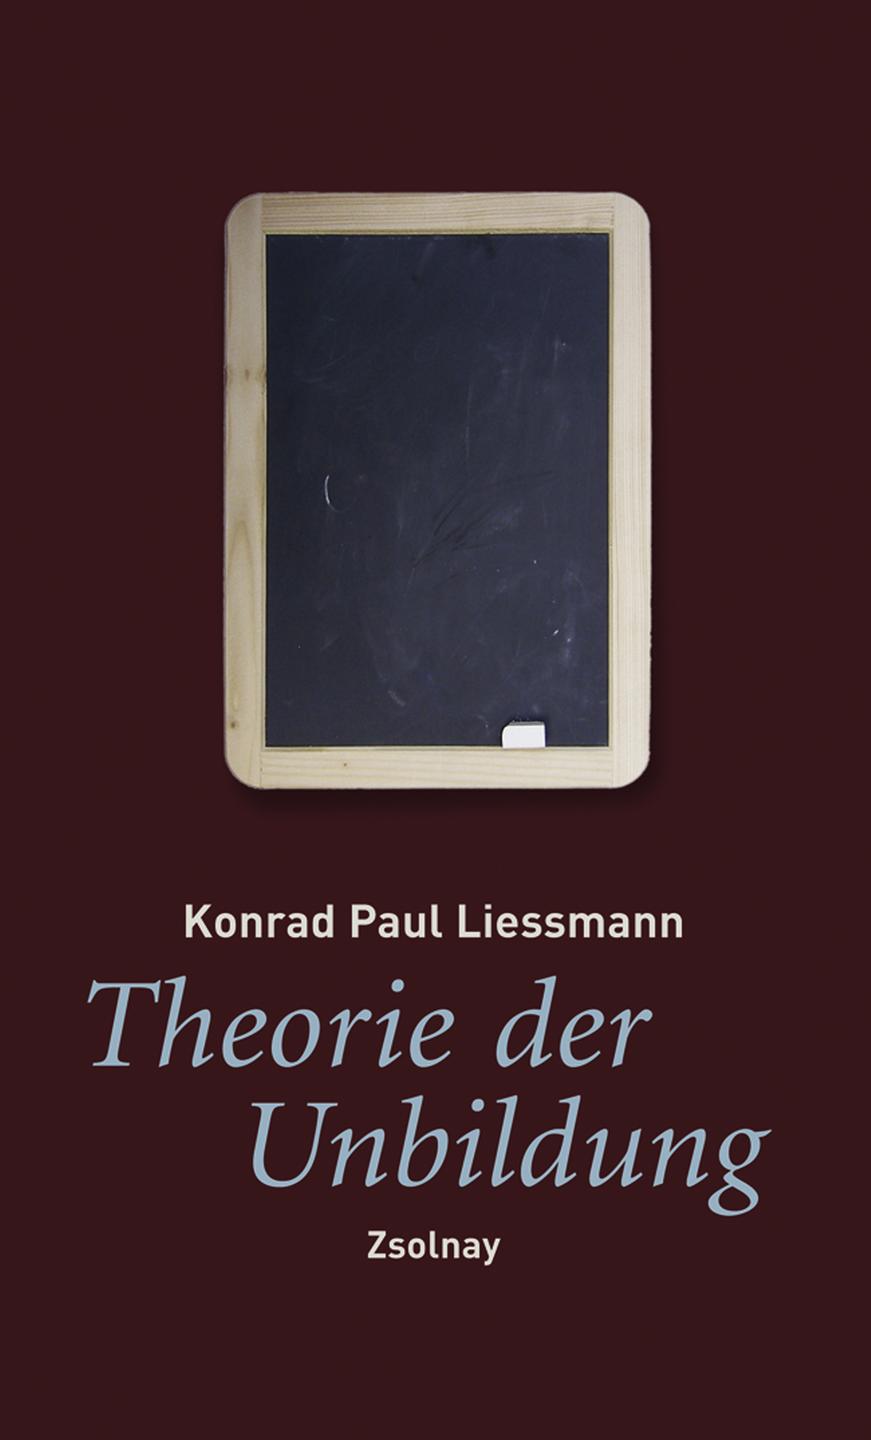 Lesart-Cover: Konrad Paul Liessmann "Theorie der Unbildung"